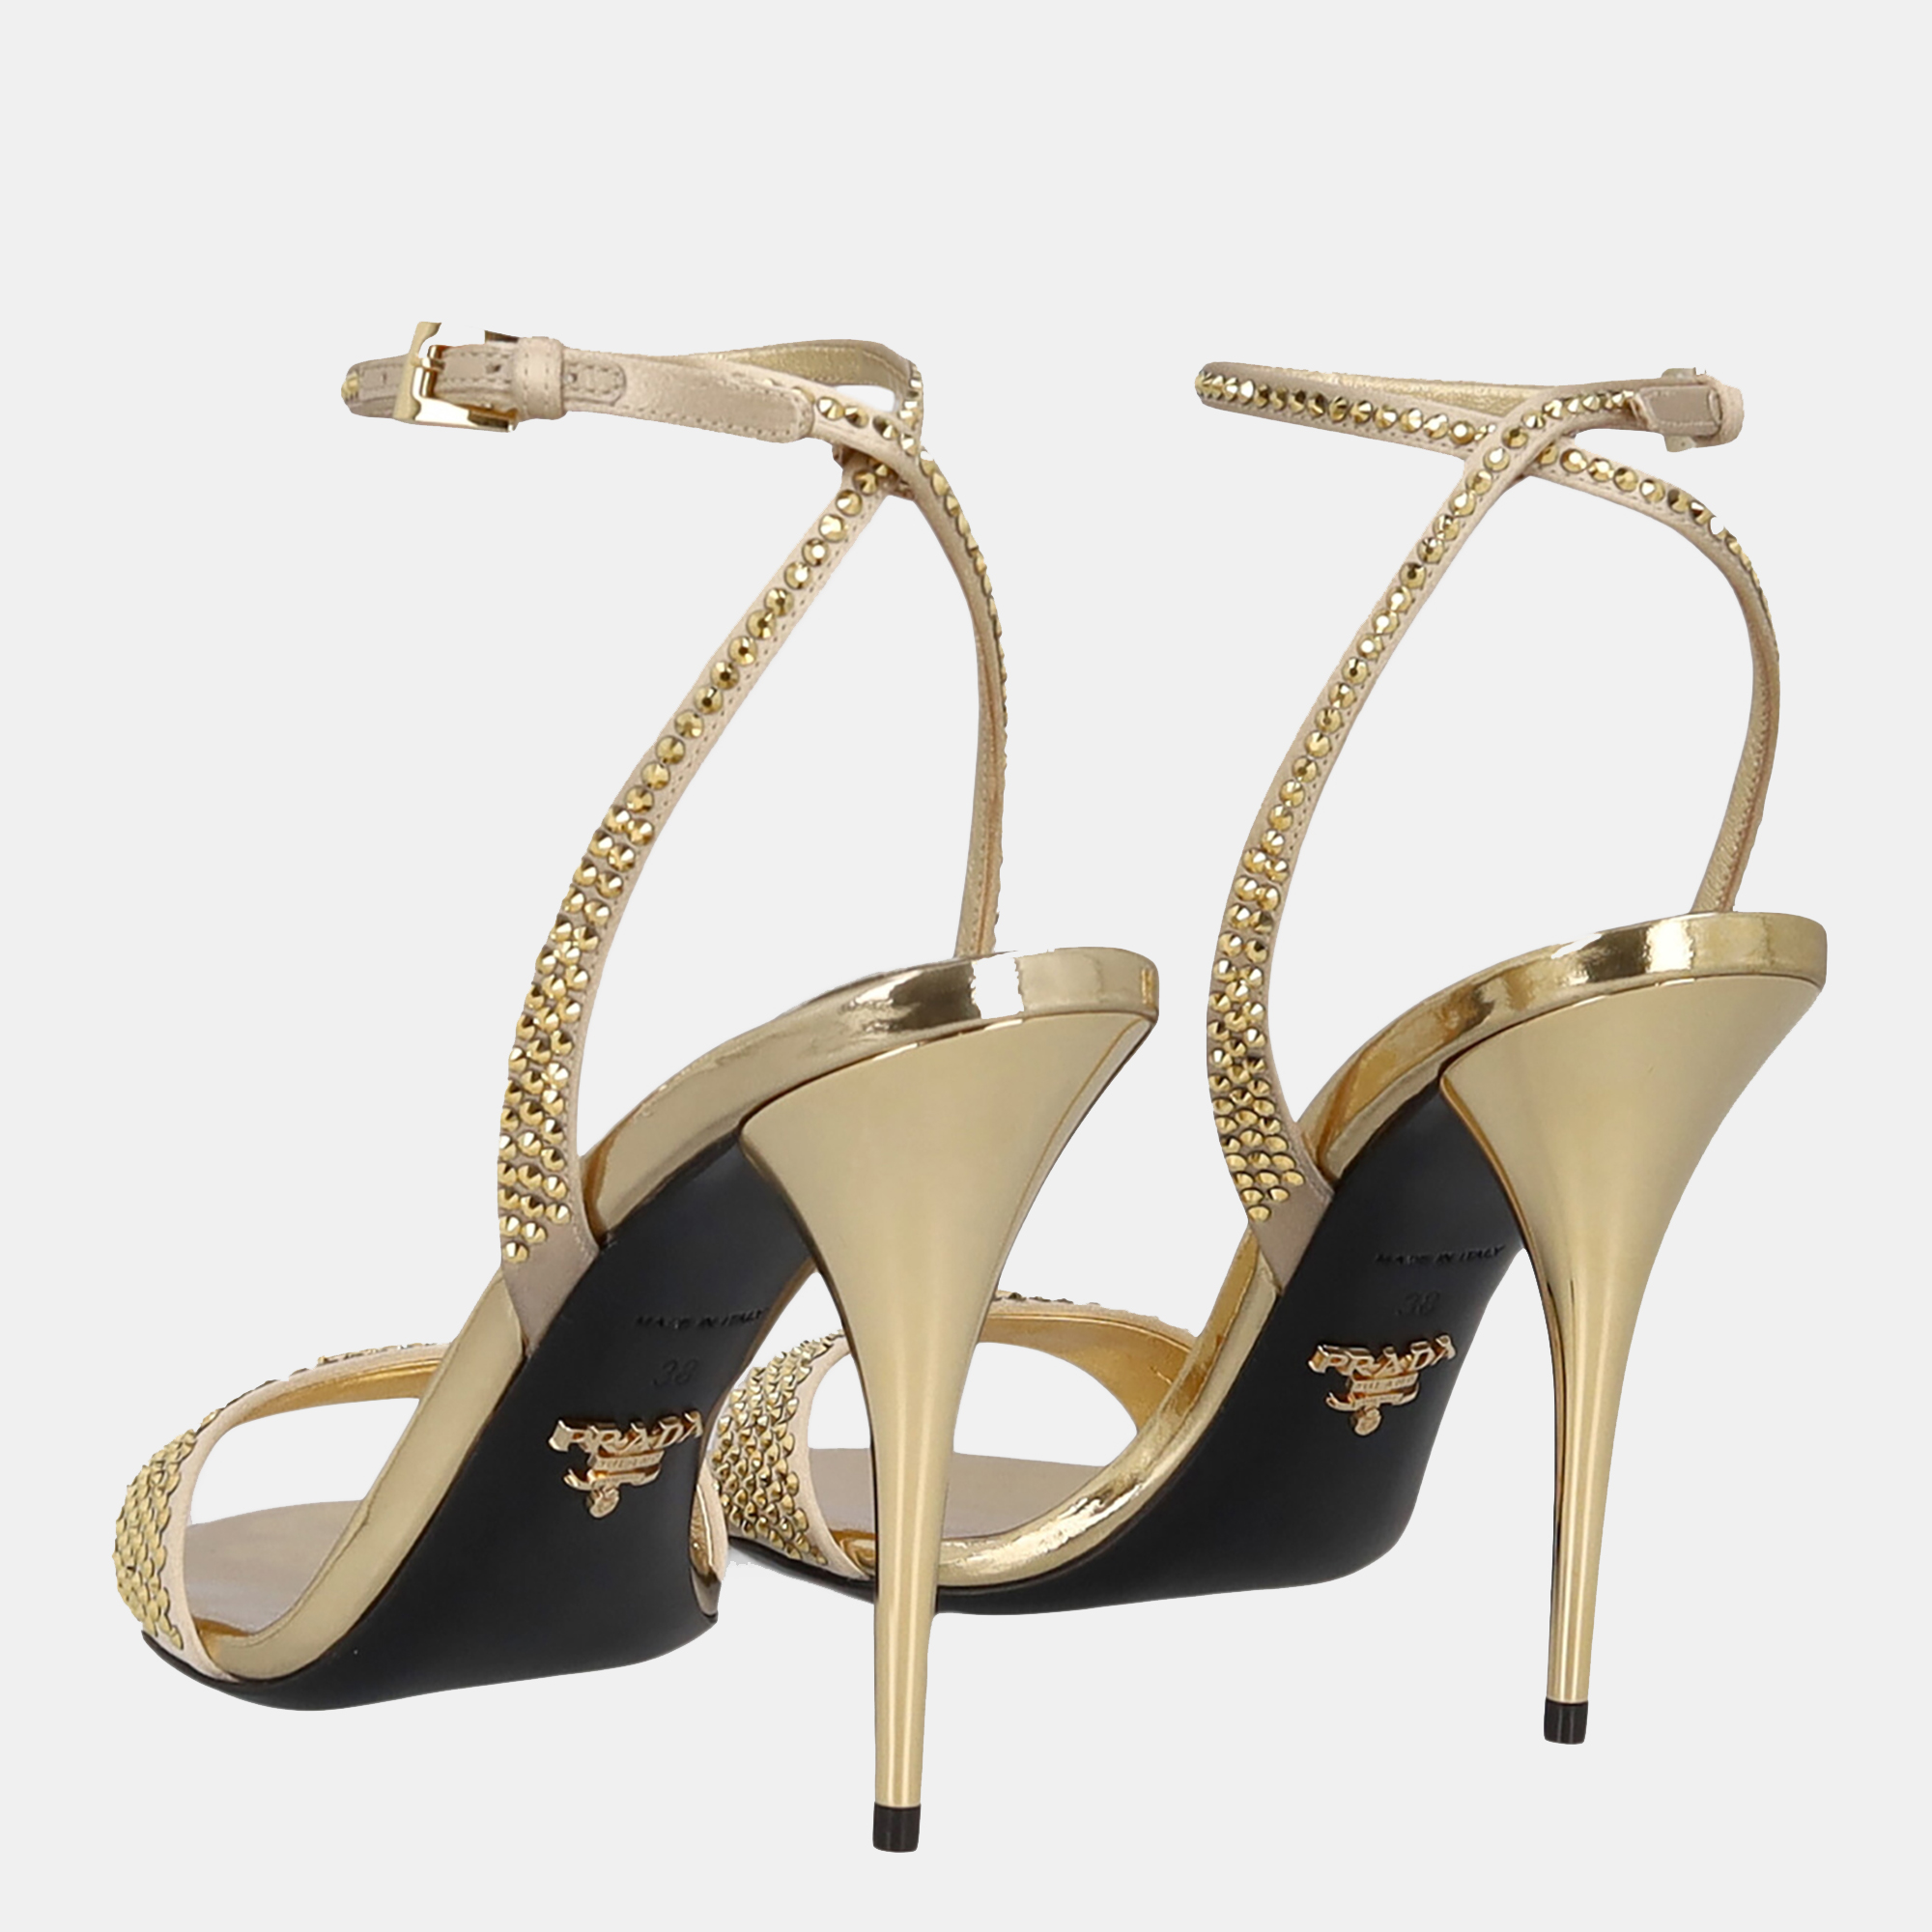 Prada Women's Leather Sandals - Gold - EU 38